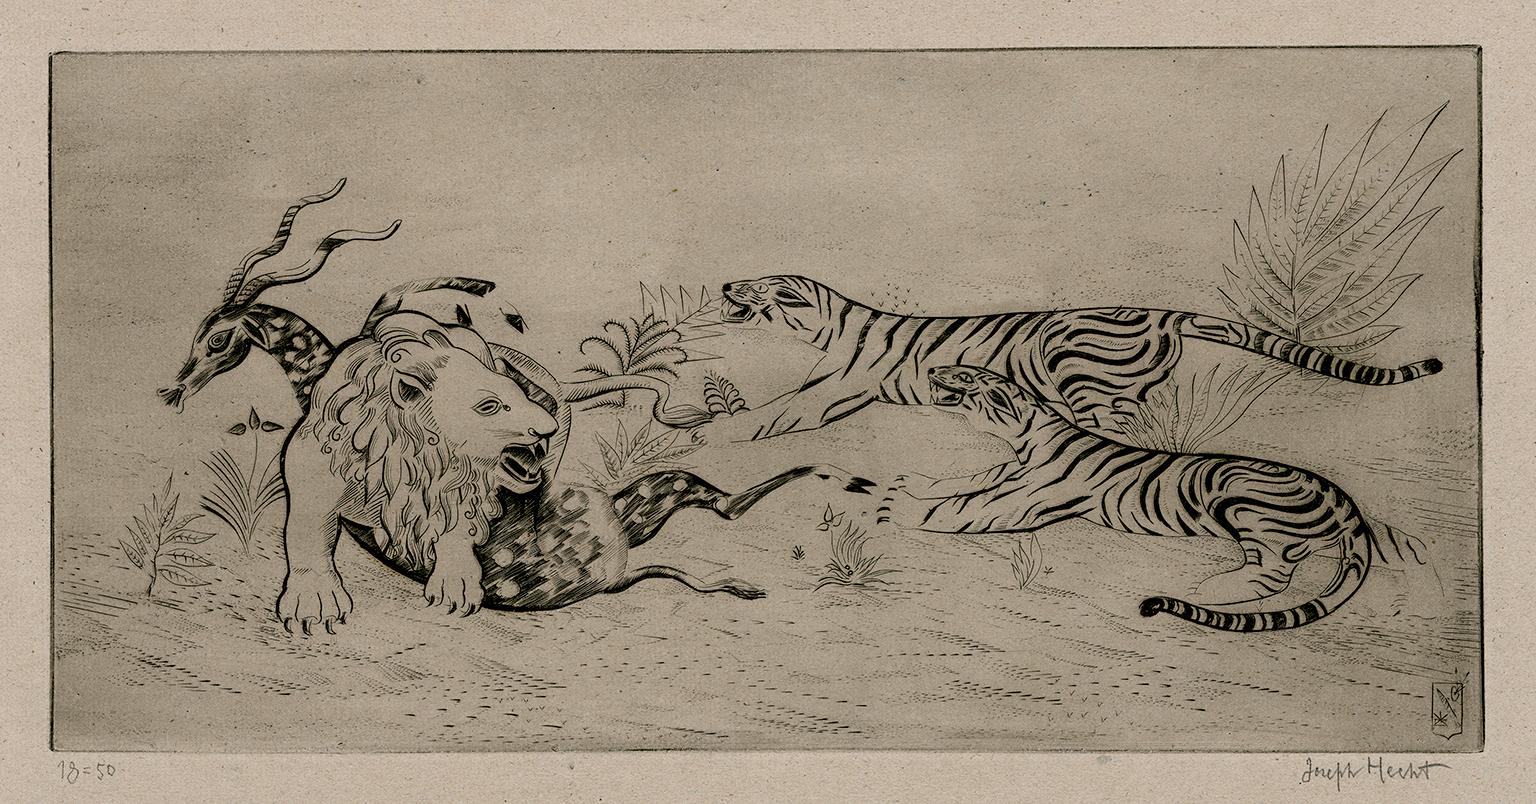 Lion Défendant sa Proie (Lion Defending Its Prey)